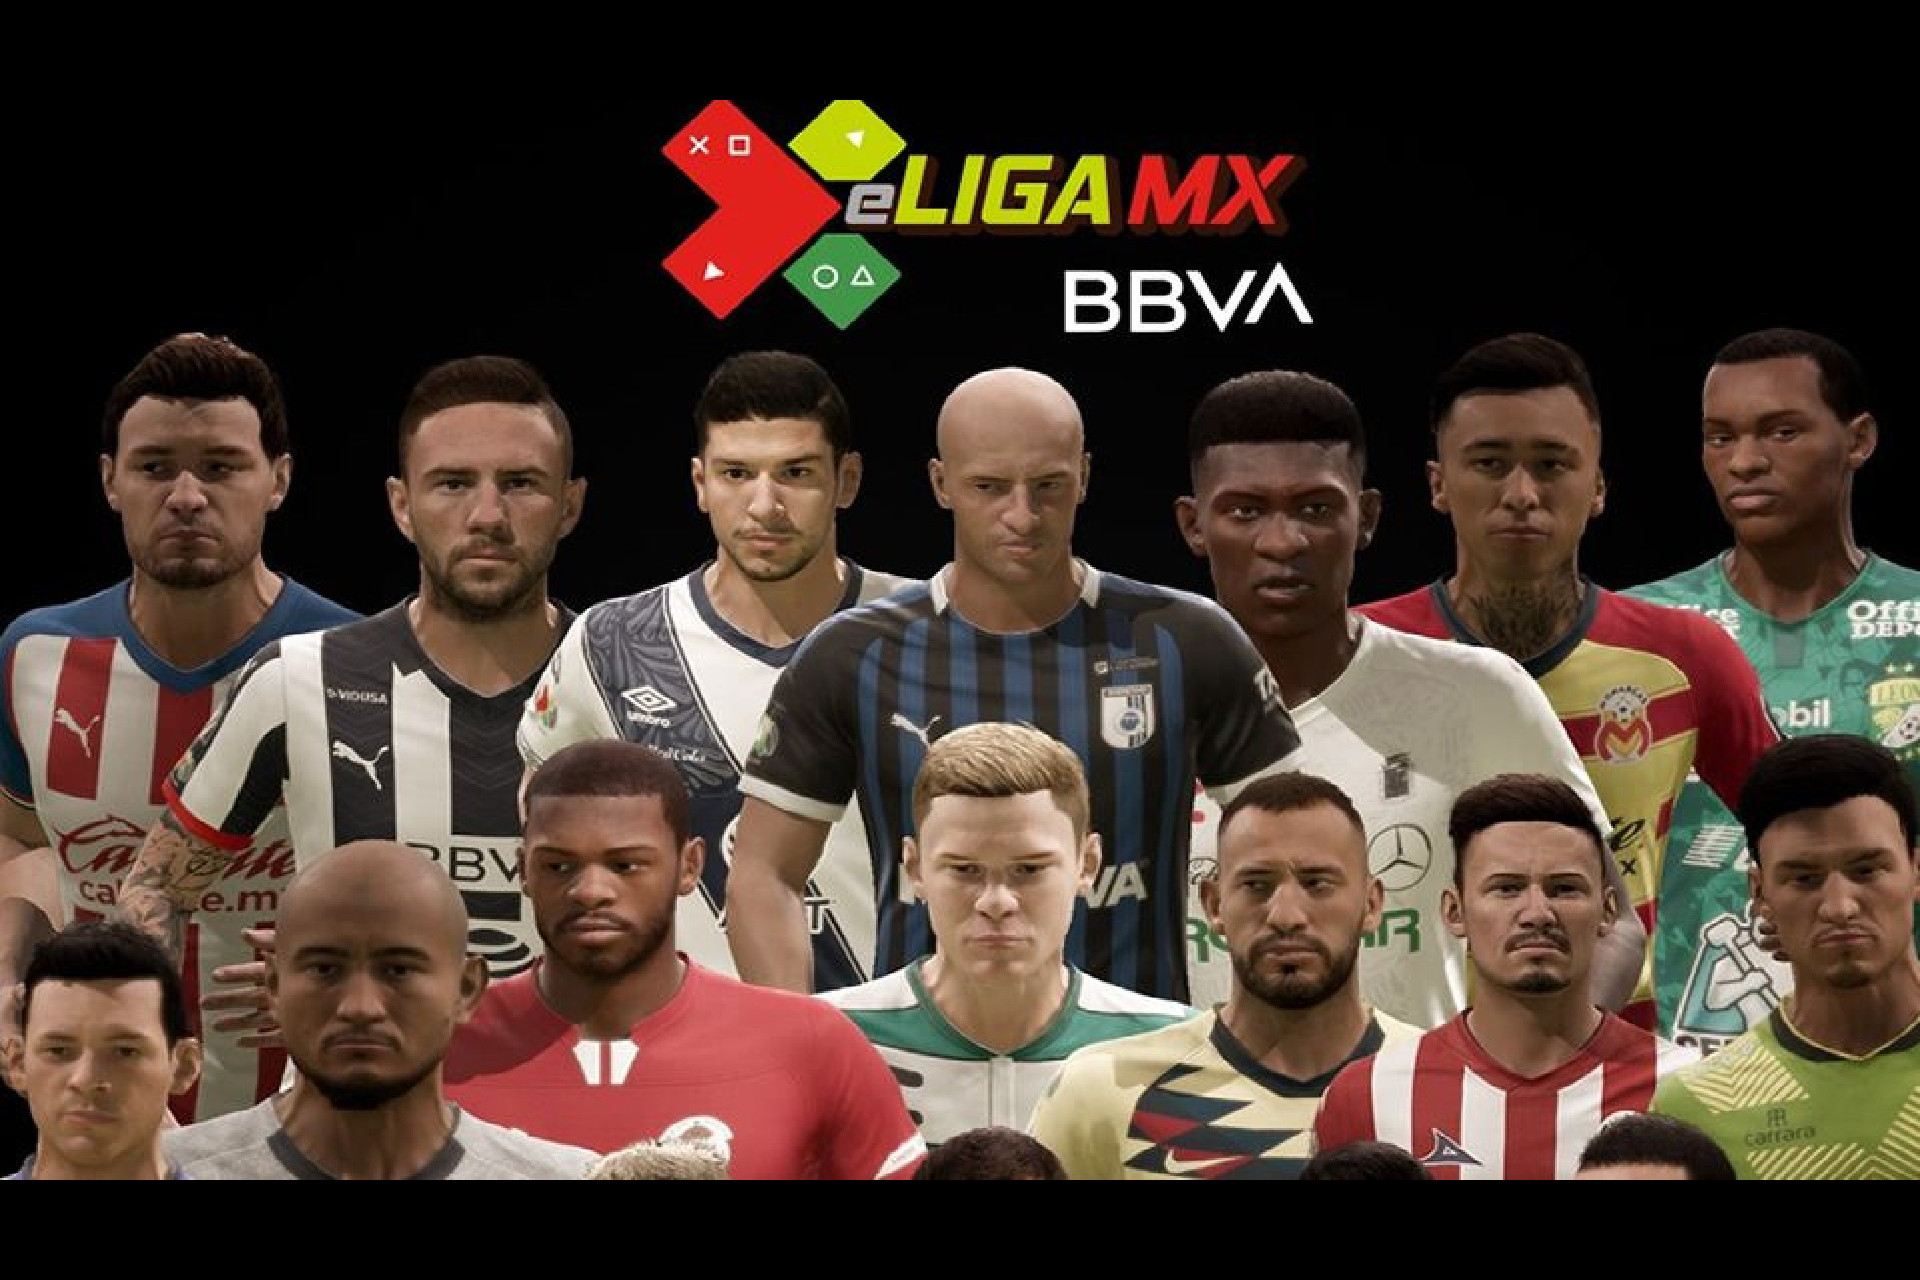 Liga MX deja FIFA para unirse a Konami en acuerdo exclusivo